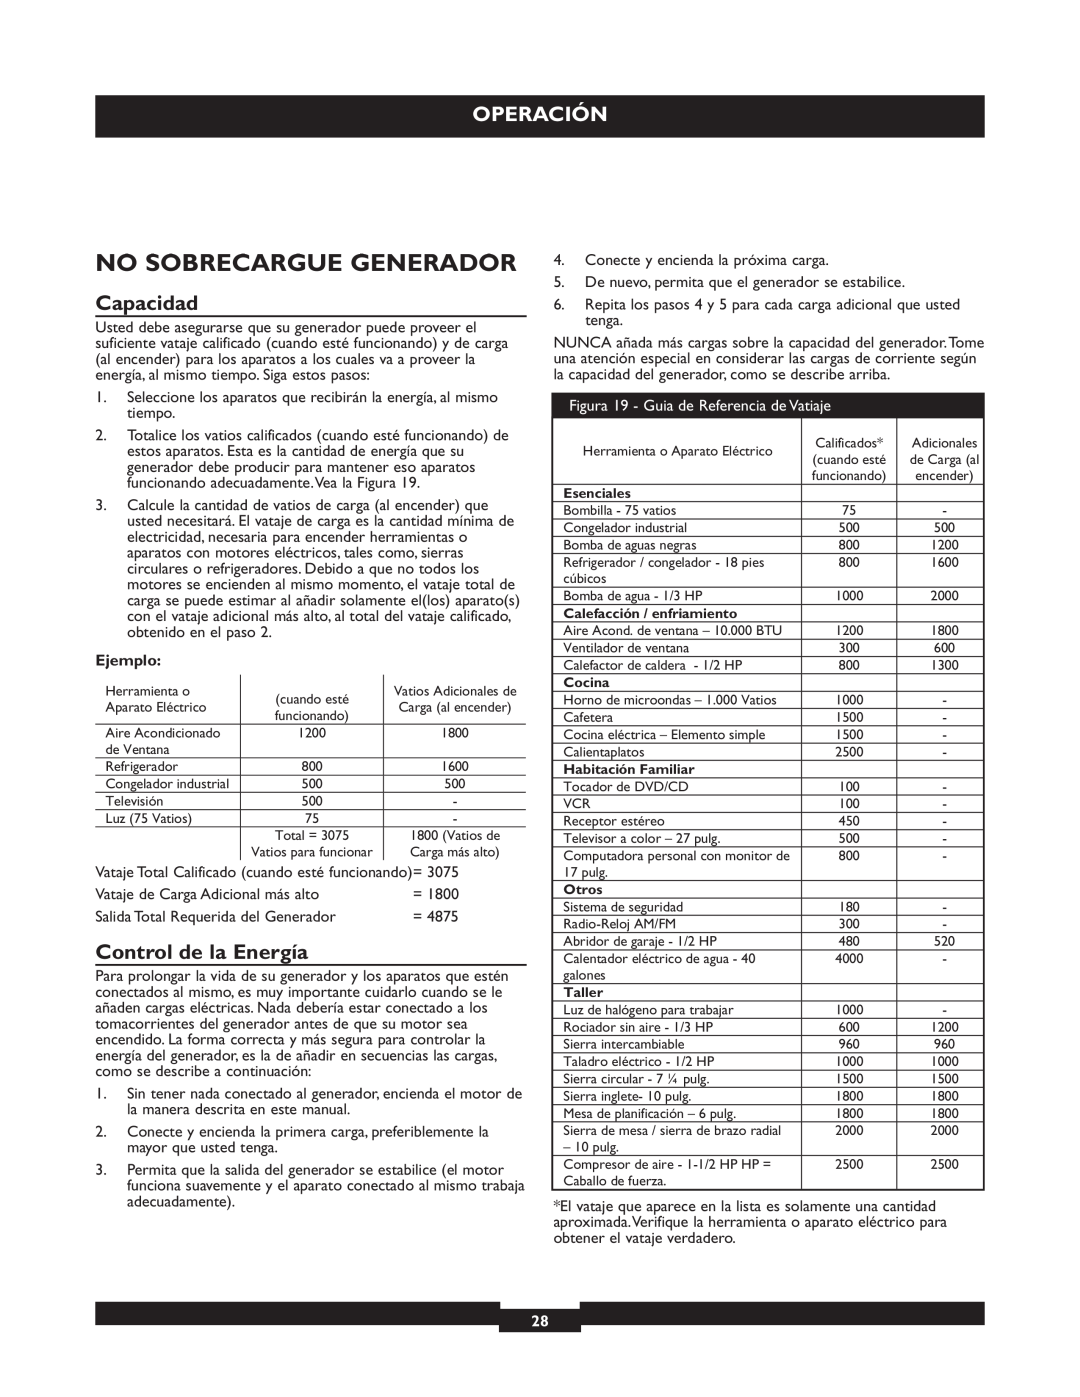 Briggs & Stratton 30205 manual No Sobrecargue Generador, Capacidad, Control de la Energía, Operación 